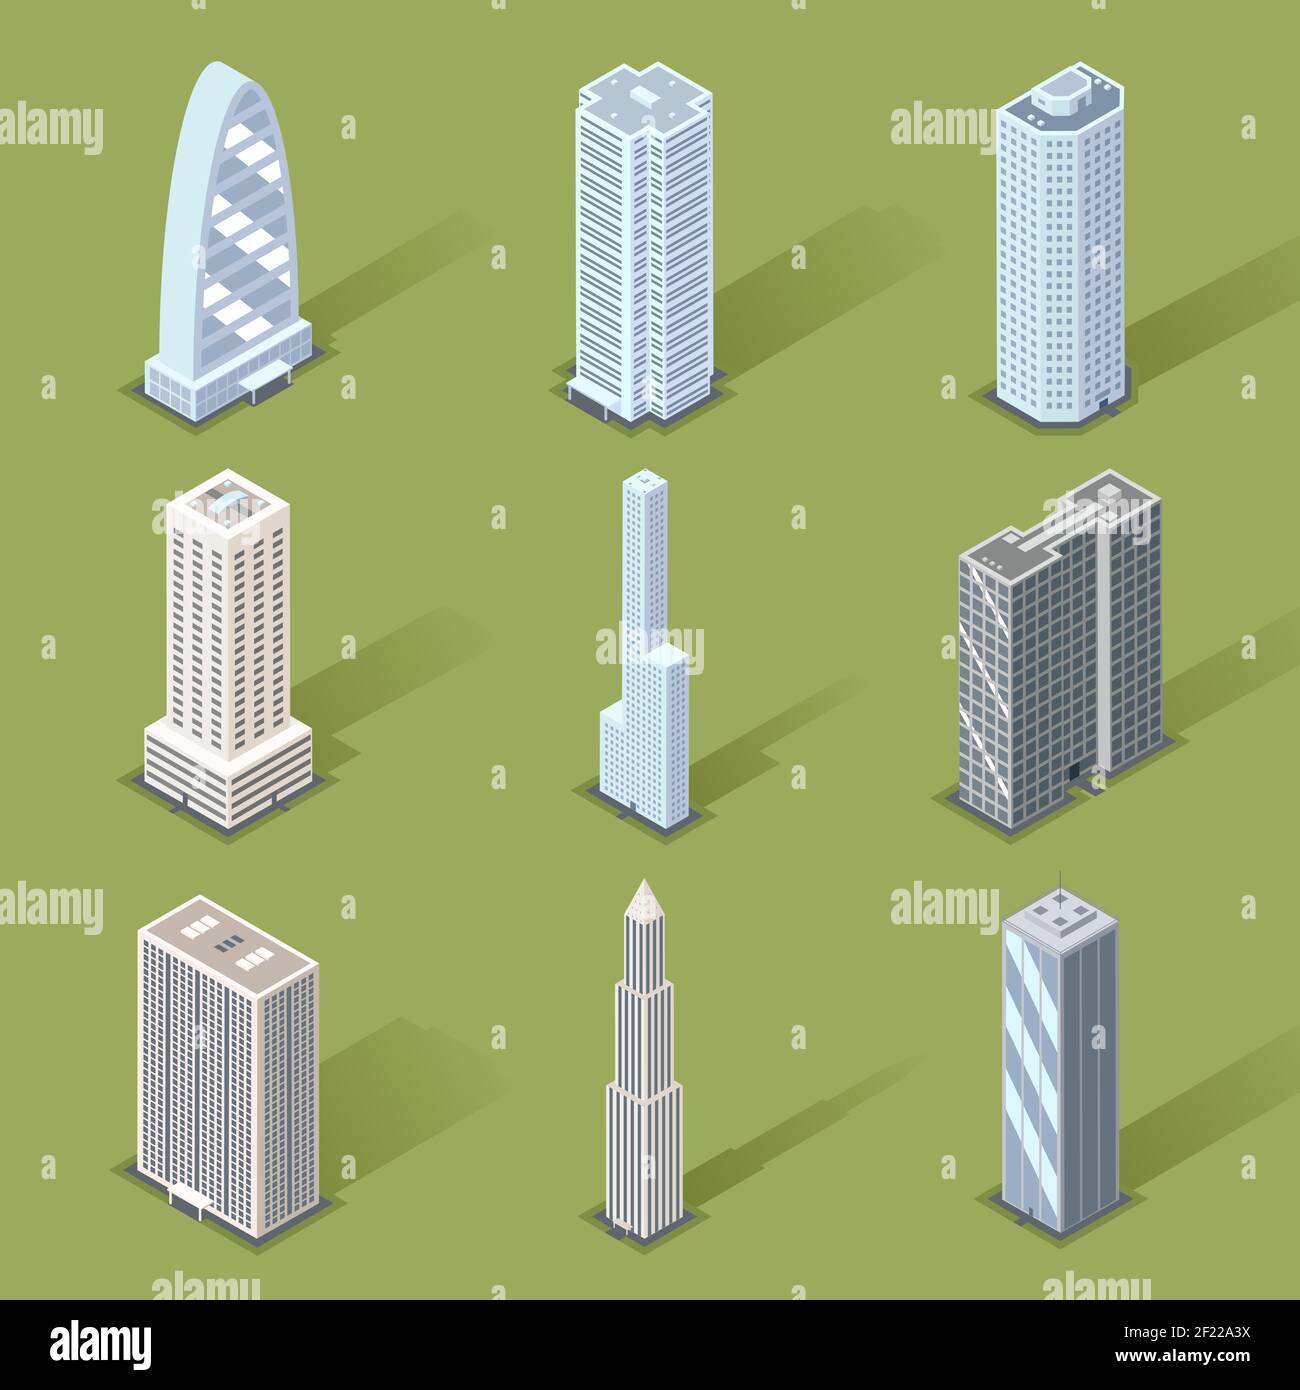 Motifs graphiques Skyscraper en trois dimensions assortis sur fond vert clair. Illustration de Vecteur